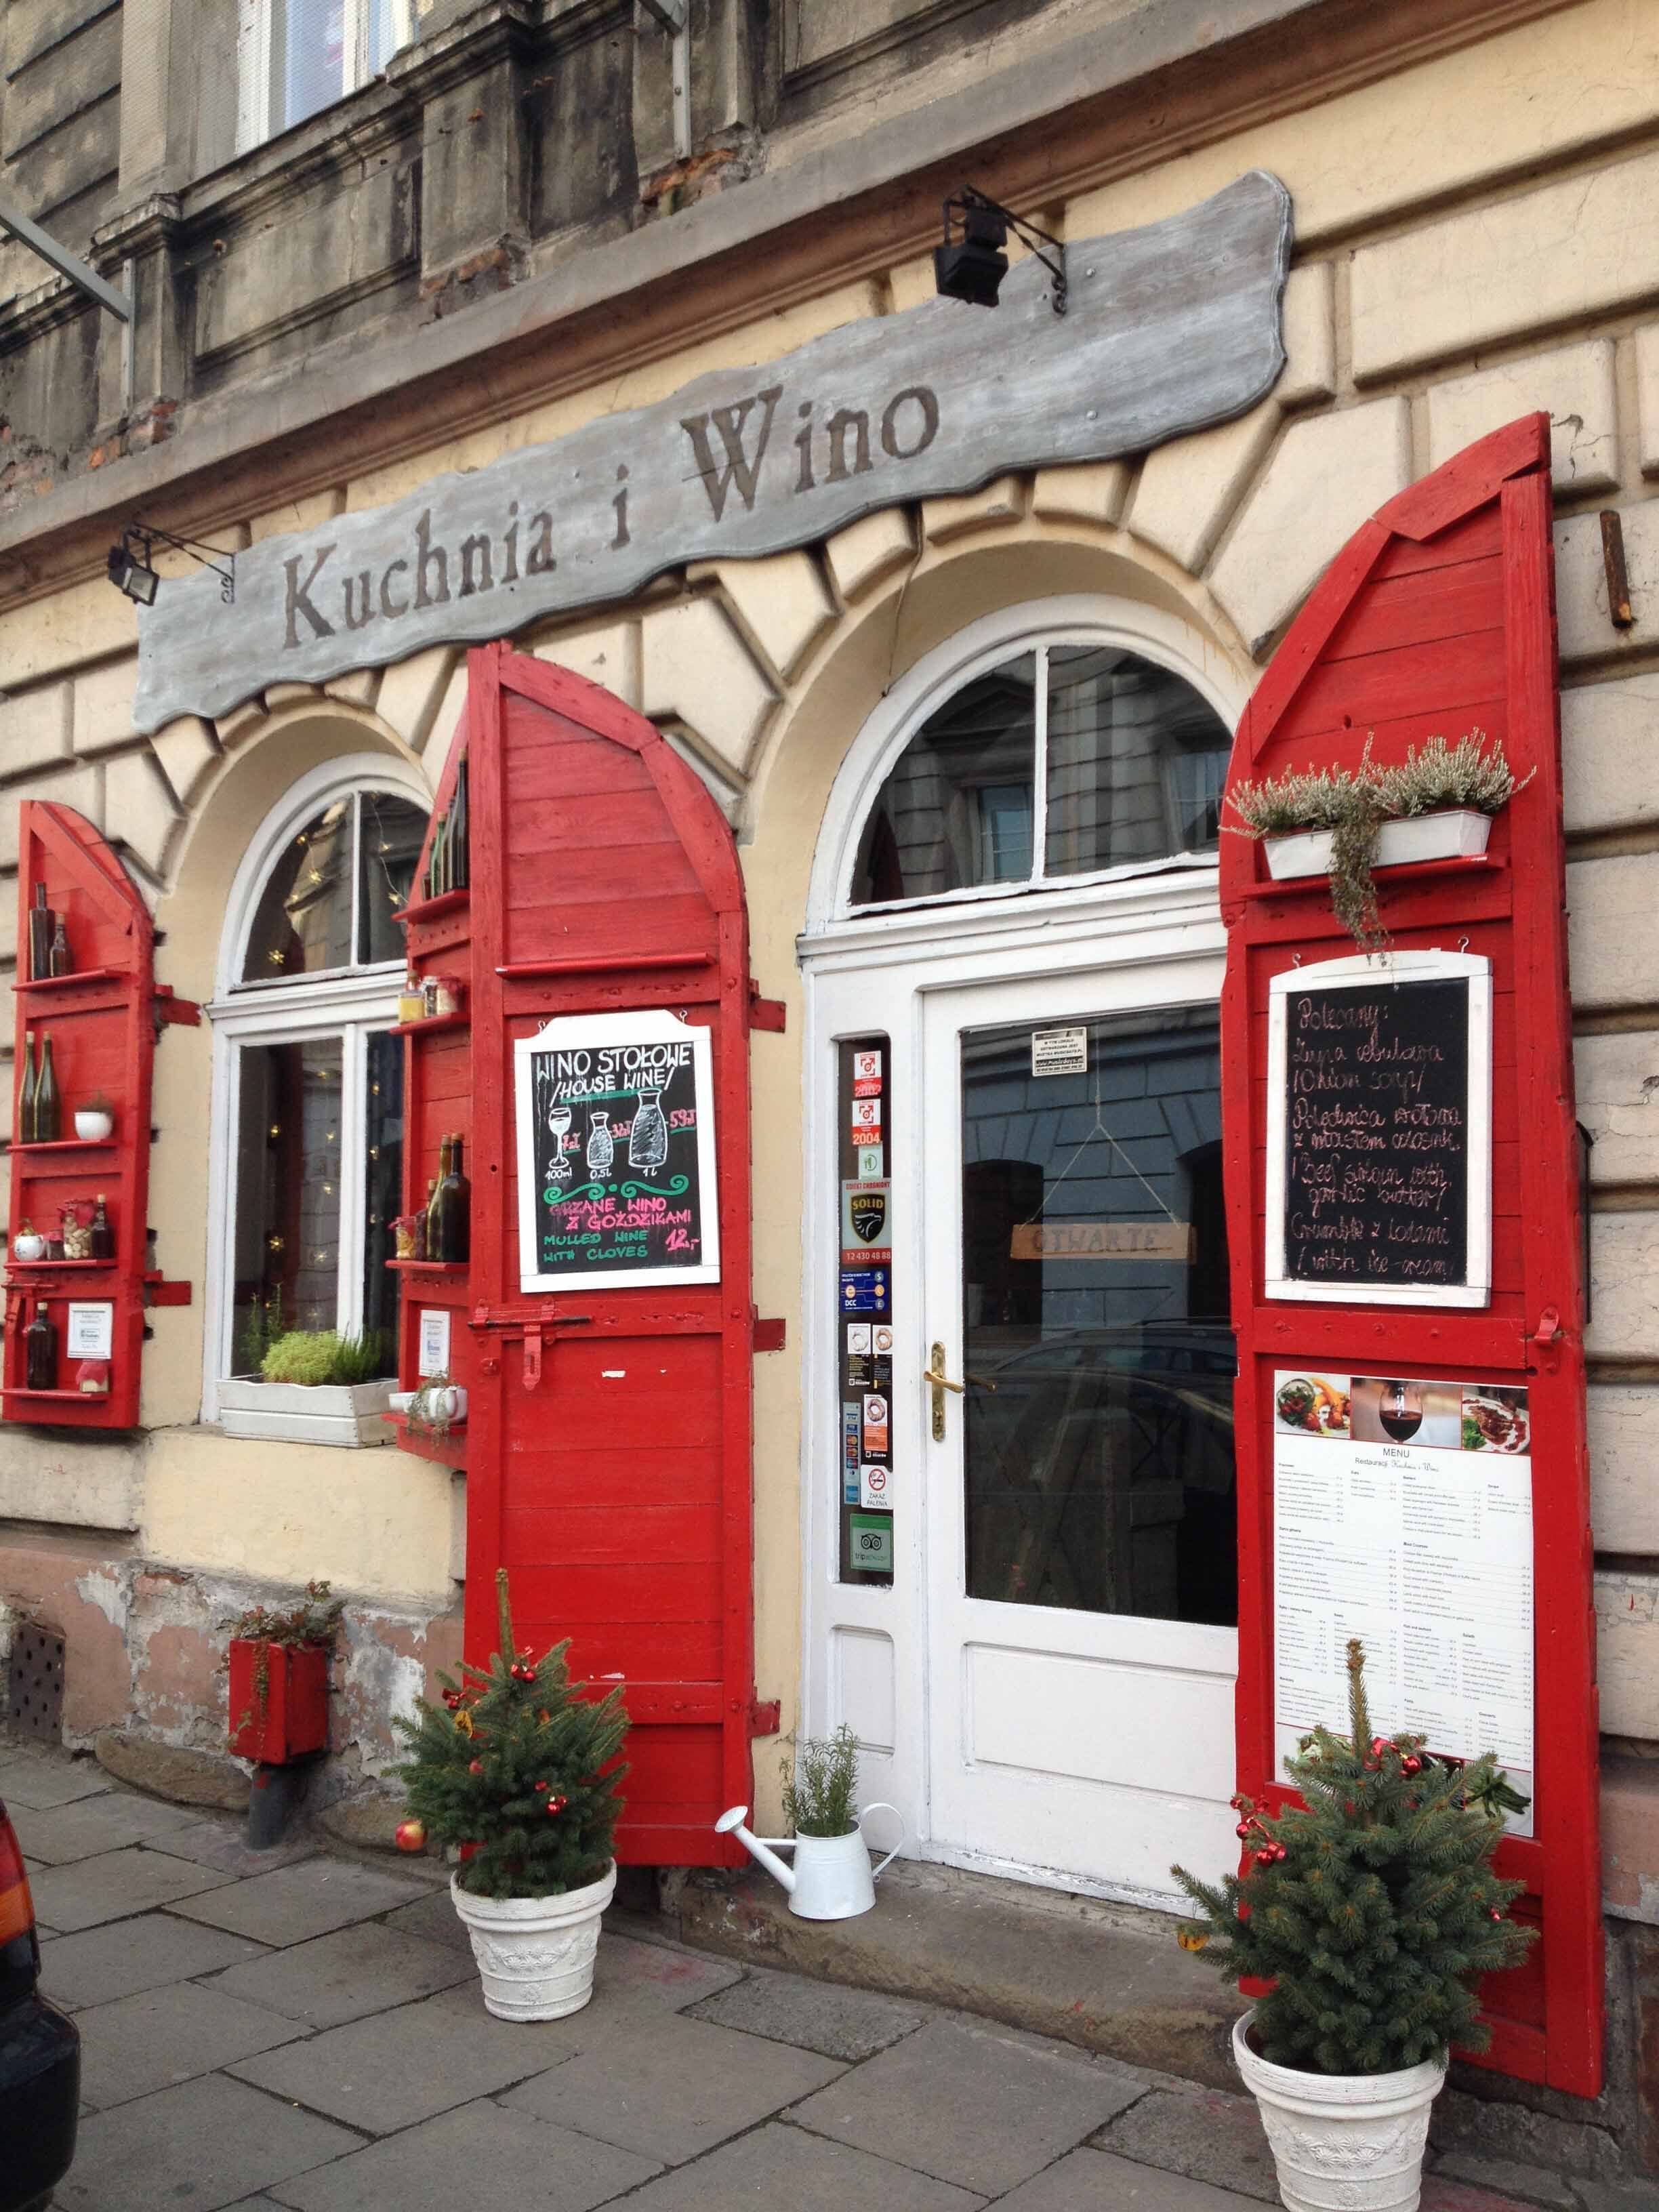 Kuchnia I Wino Menu Menu Restauracji Kuchnia I Wino Kazimierz Krakow